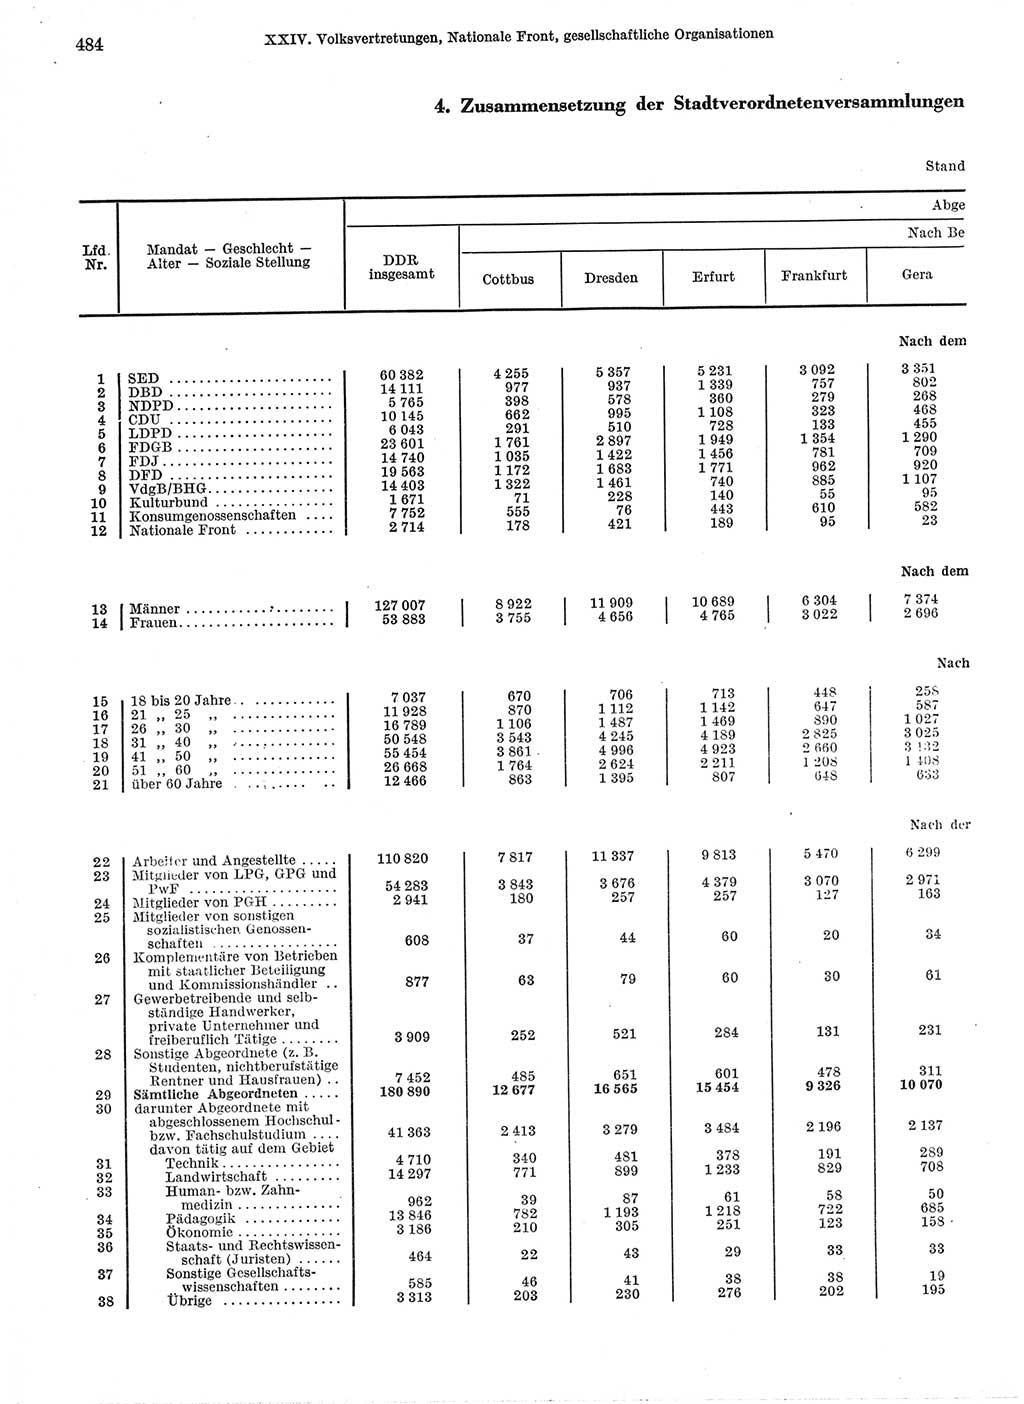 Statistisches Jahrbuch der Deutschen Demokratischen Republik (DDR) 1974, Seite 484 (Stat. Jb. DDR 1974, S. 484)